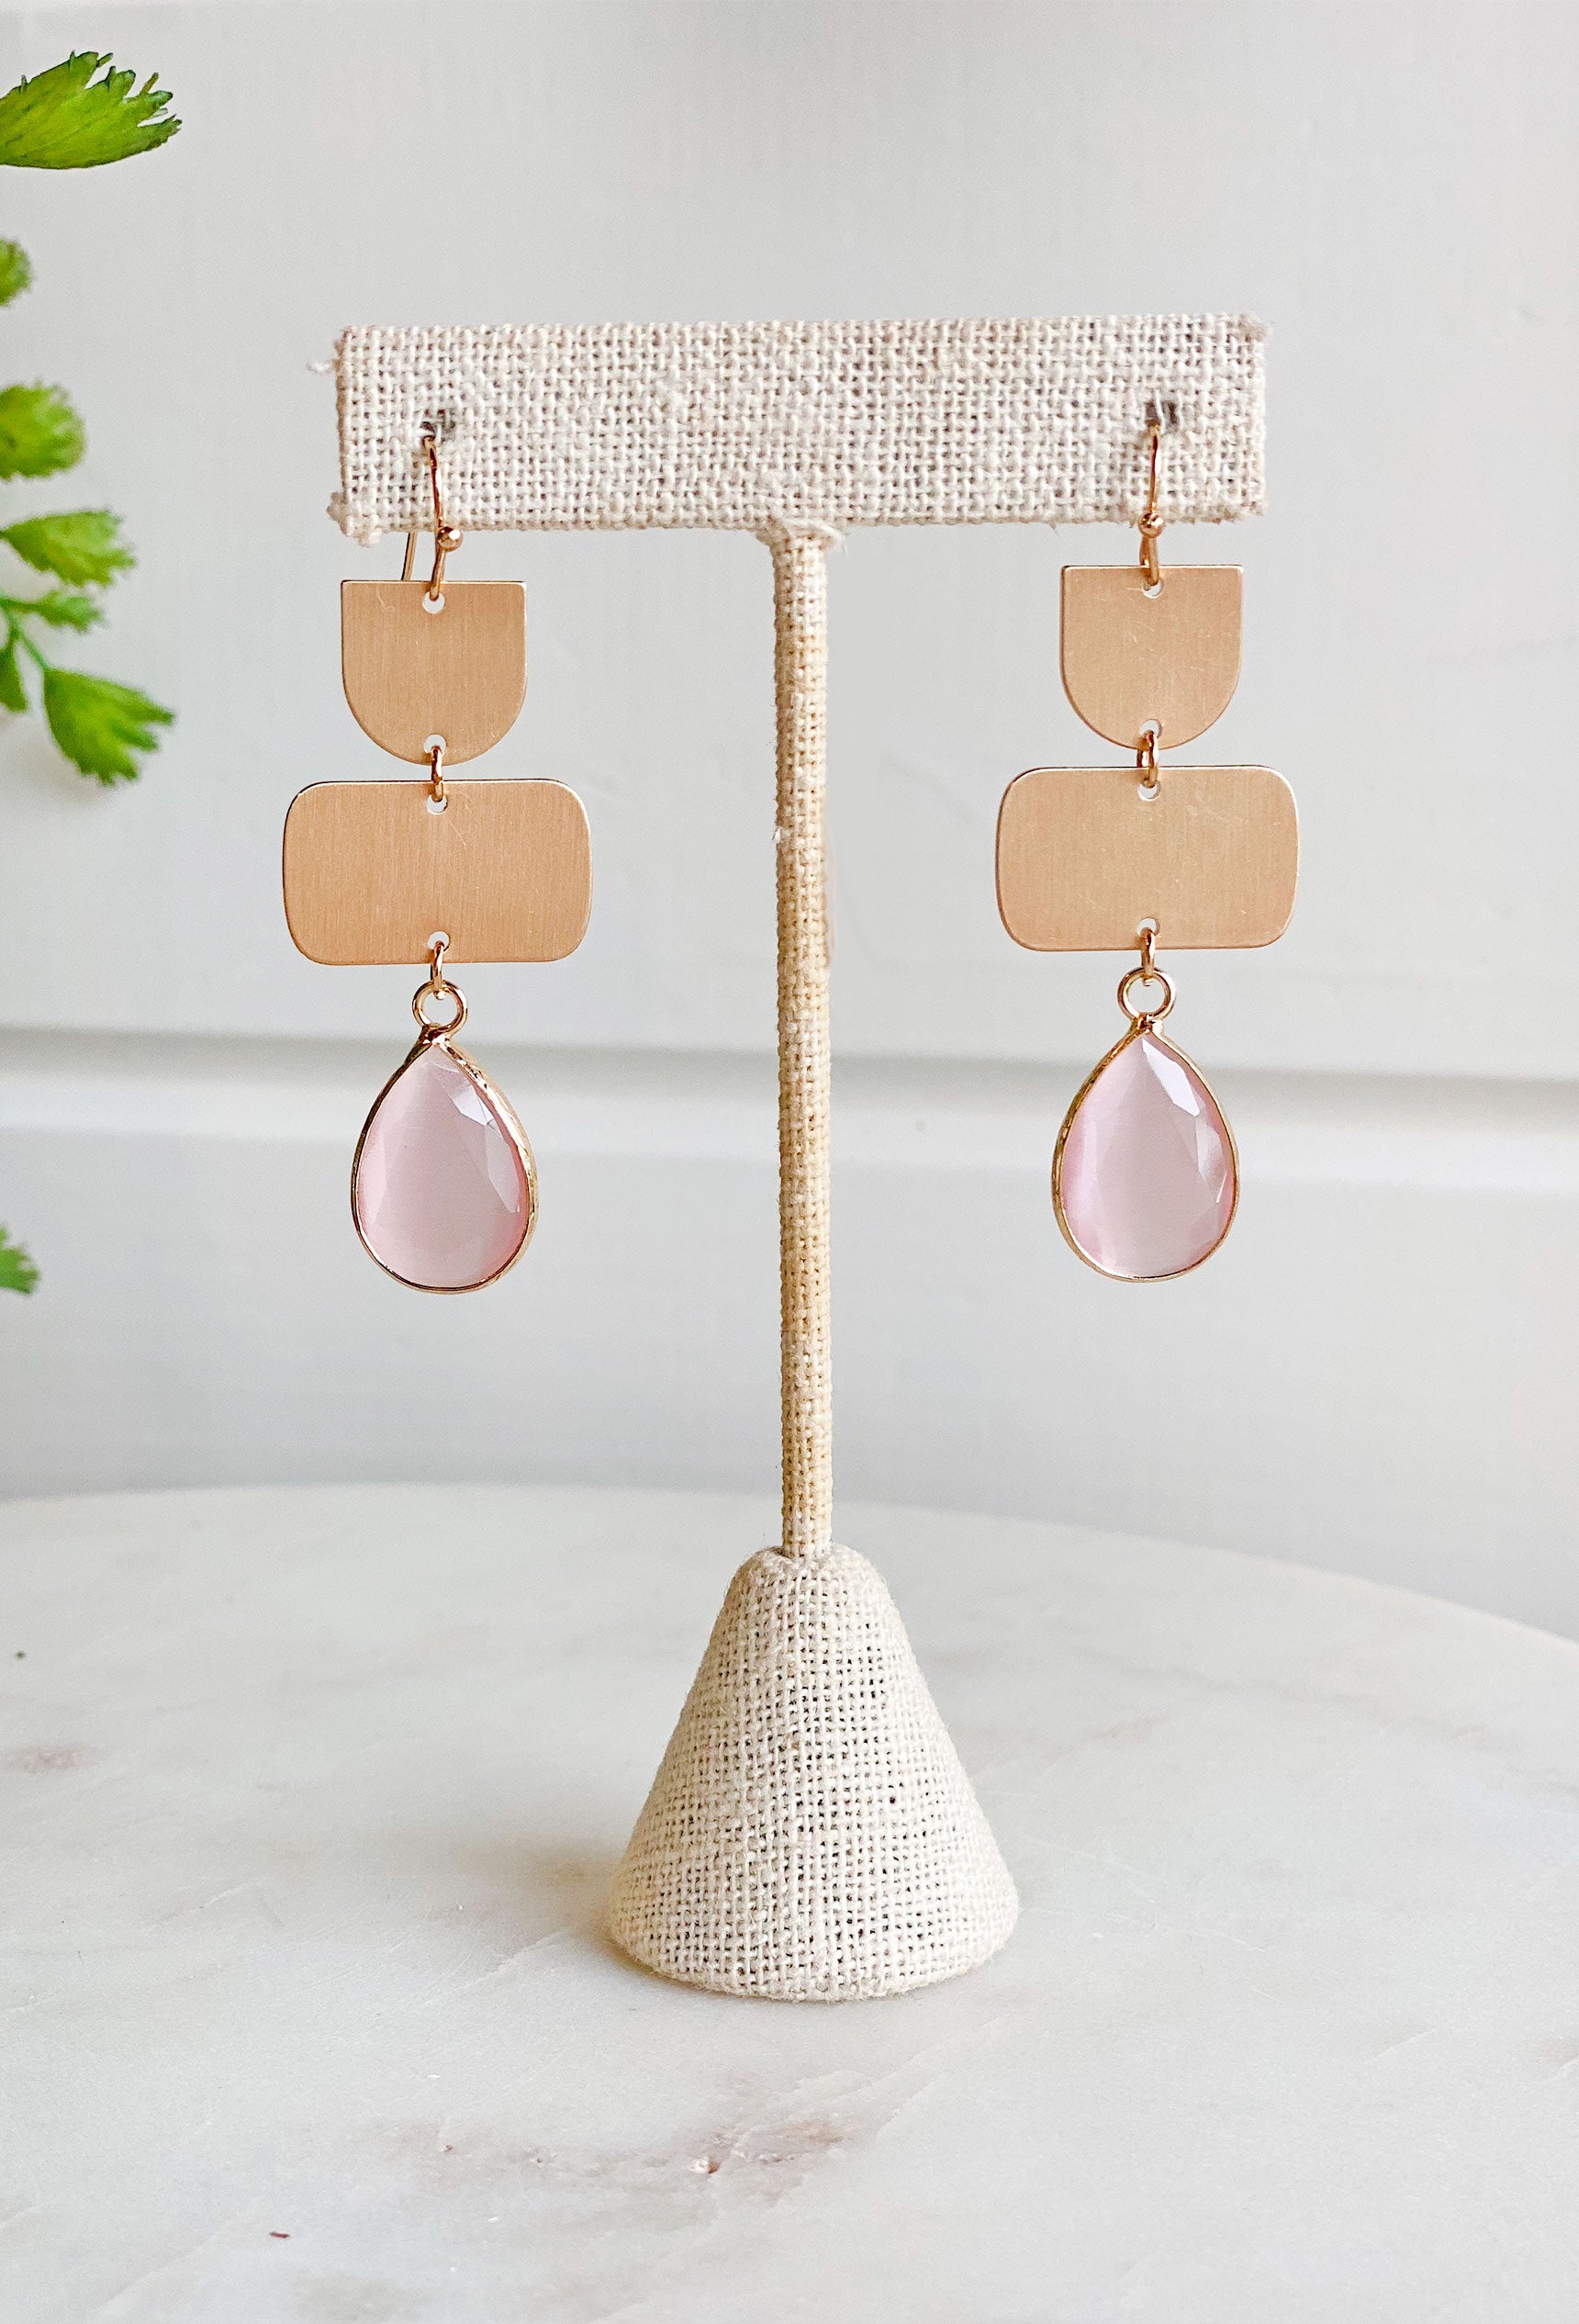 Lulu Drop Earrings in pink, gold drop earrins with pink colored gemstone in a teardrop shape